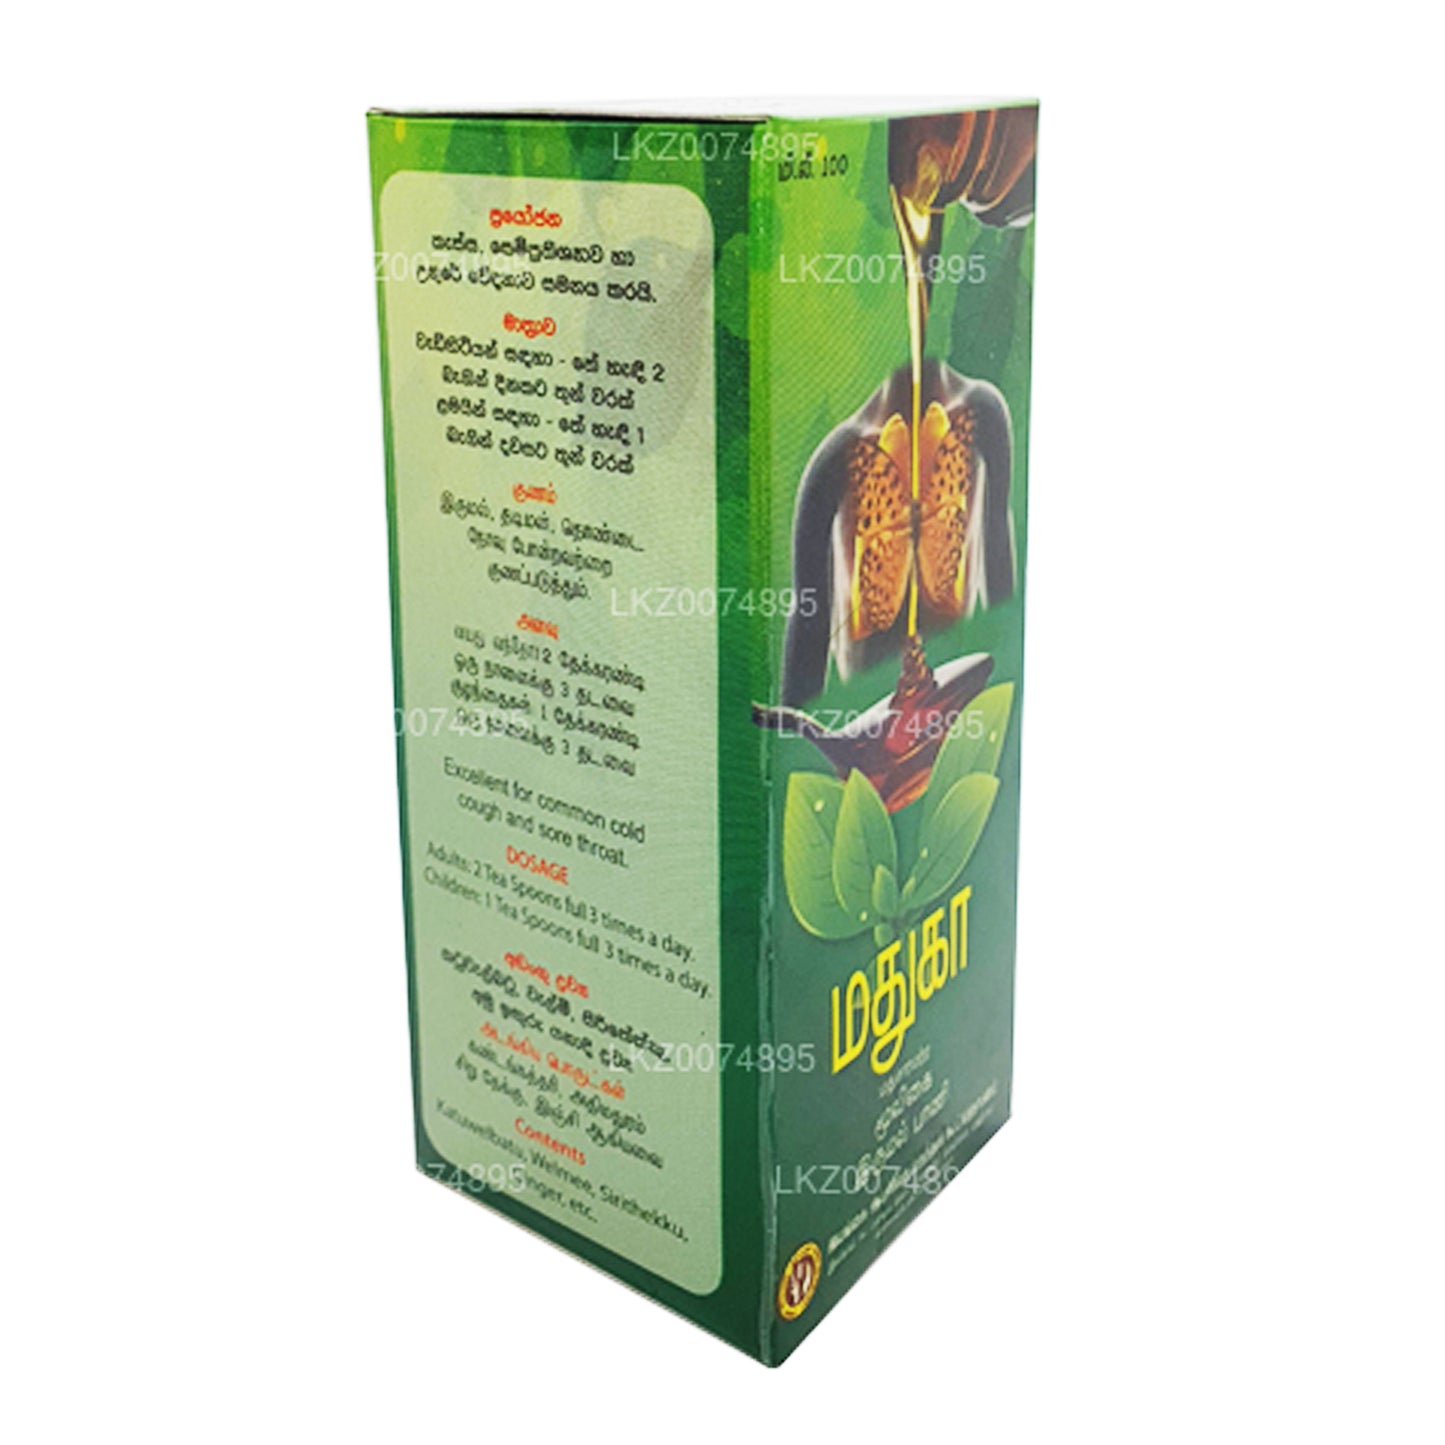 SLADC Madhuka Herbal Cough Syrup (100ml)